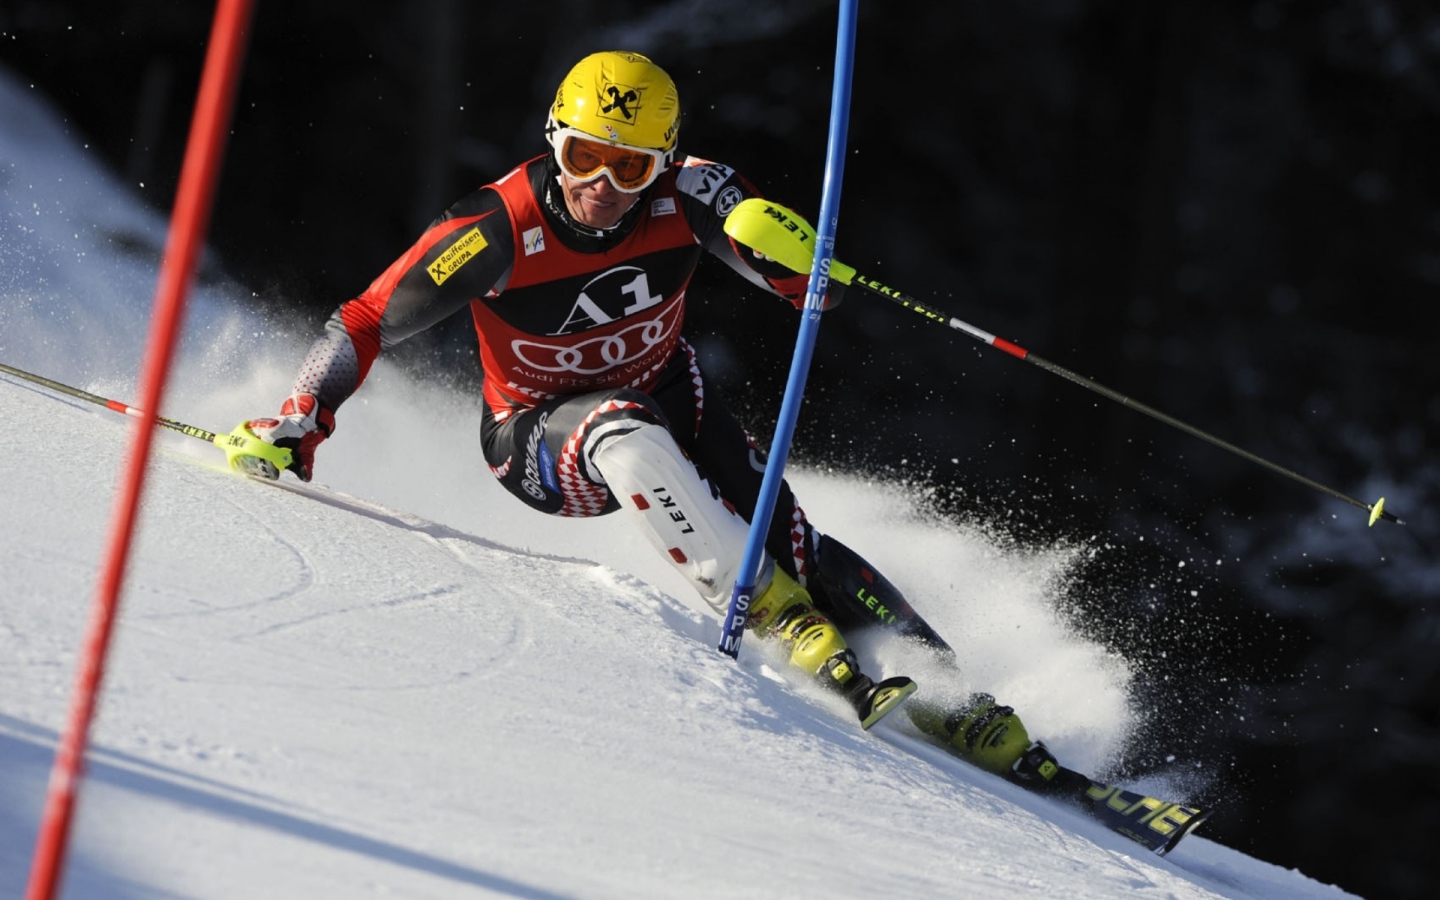 Croatian skier Ivica Kostelic winner of the silver medal in Sochi